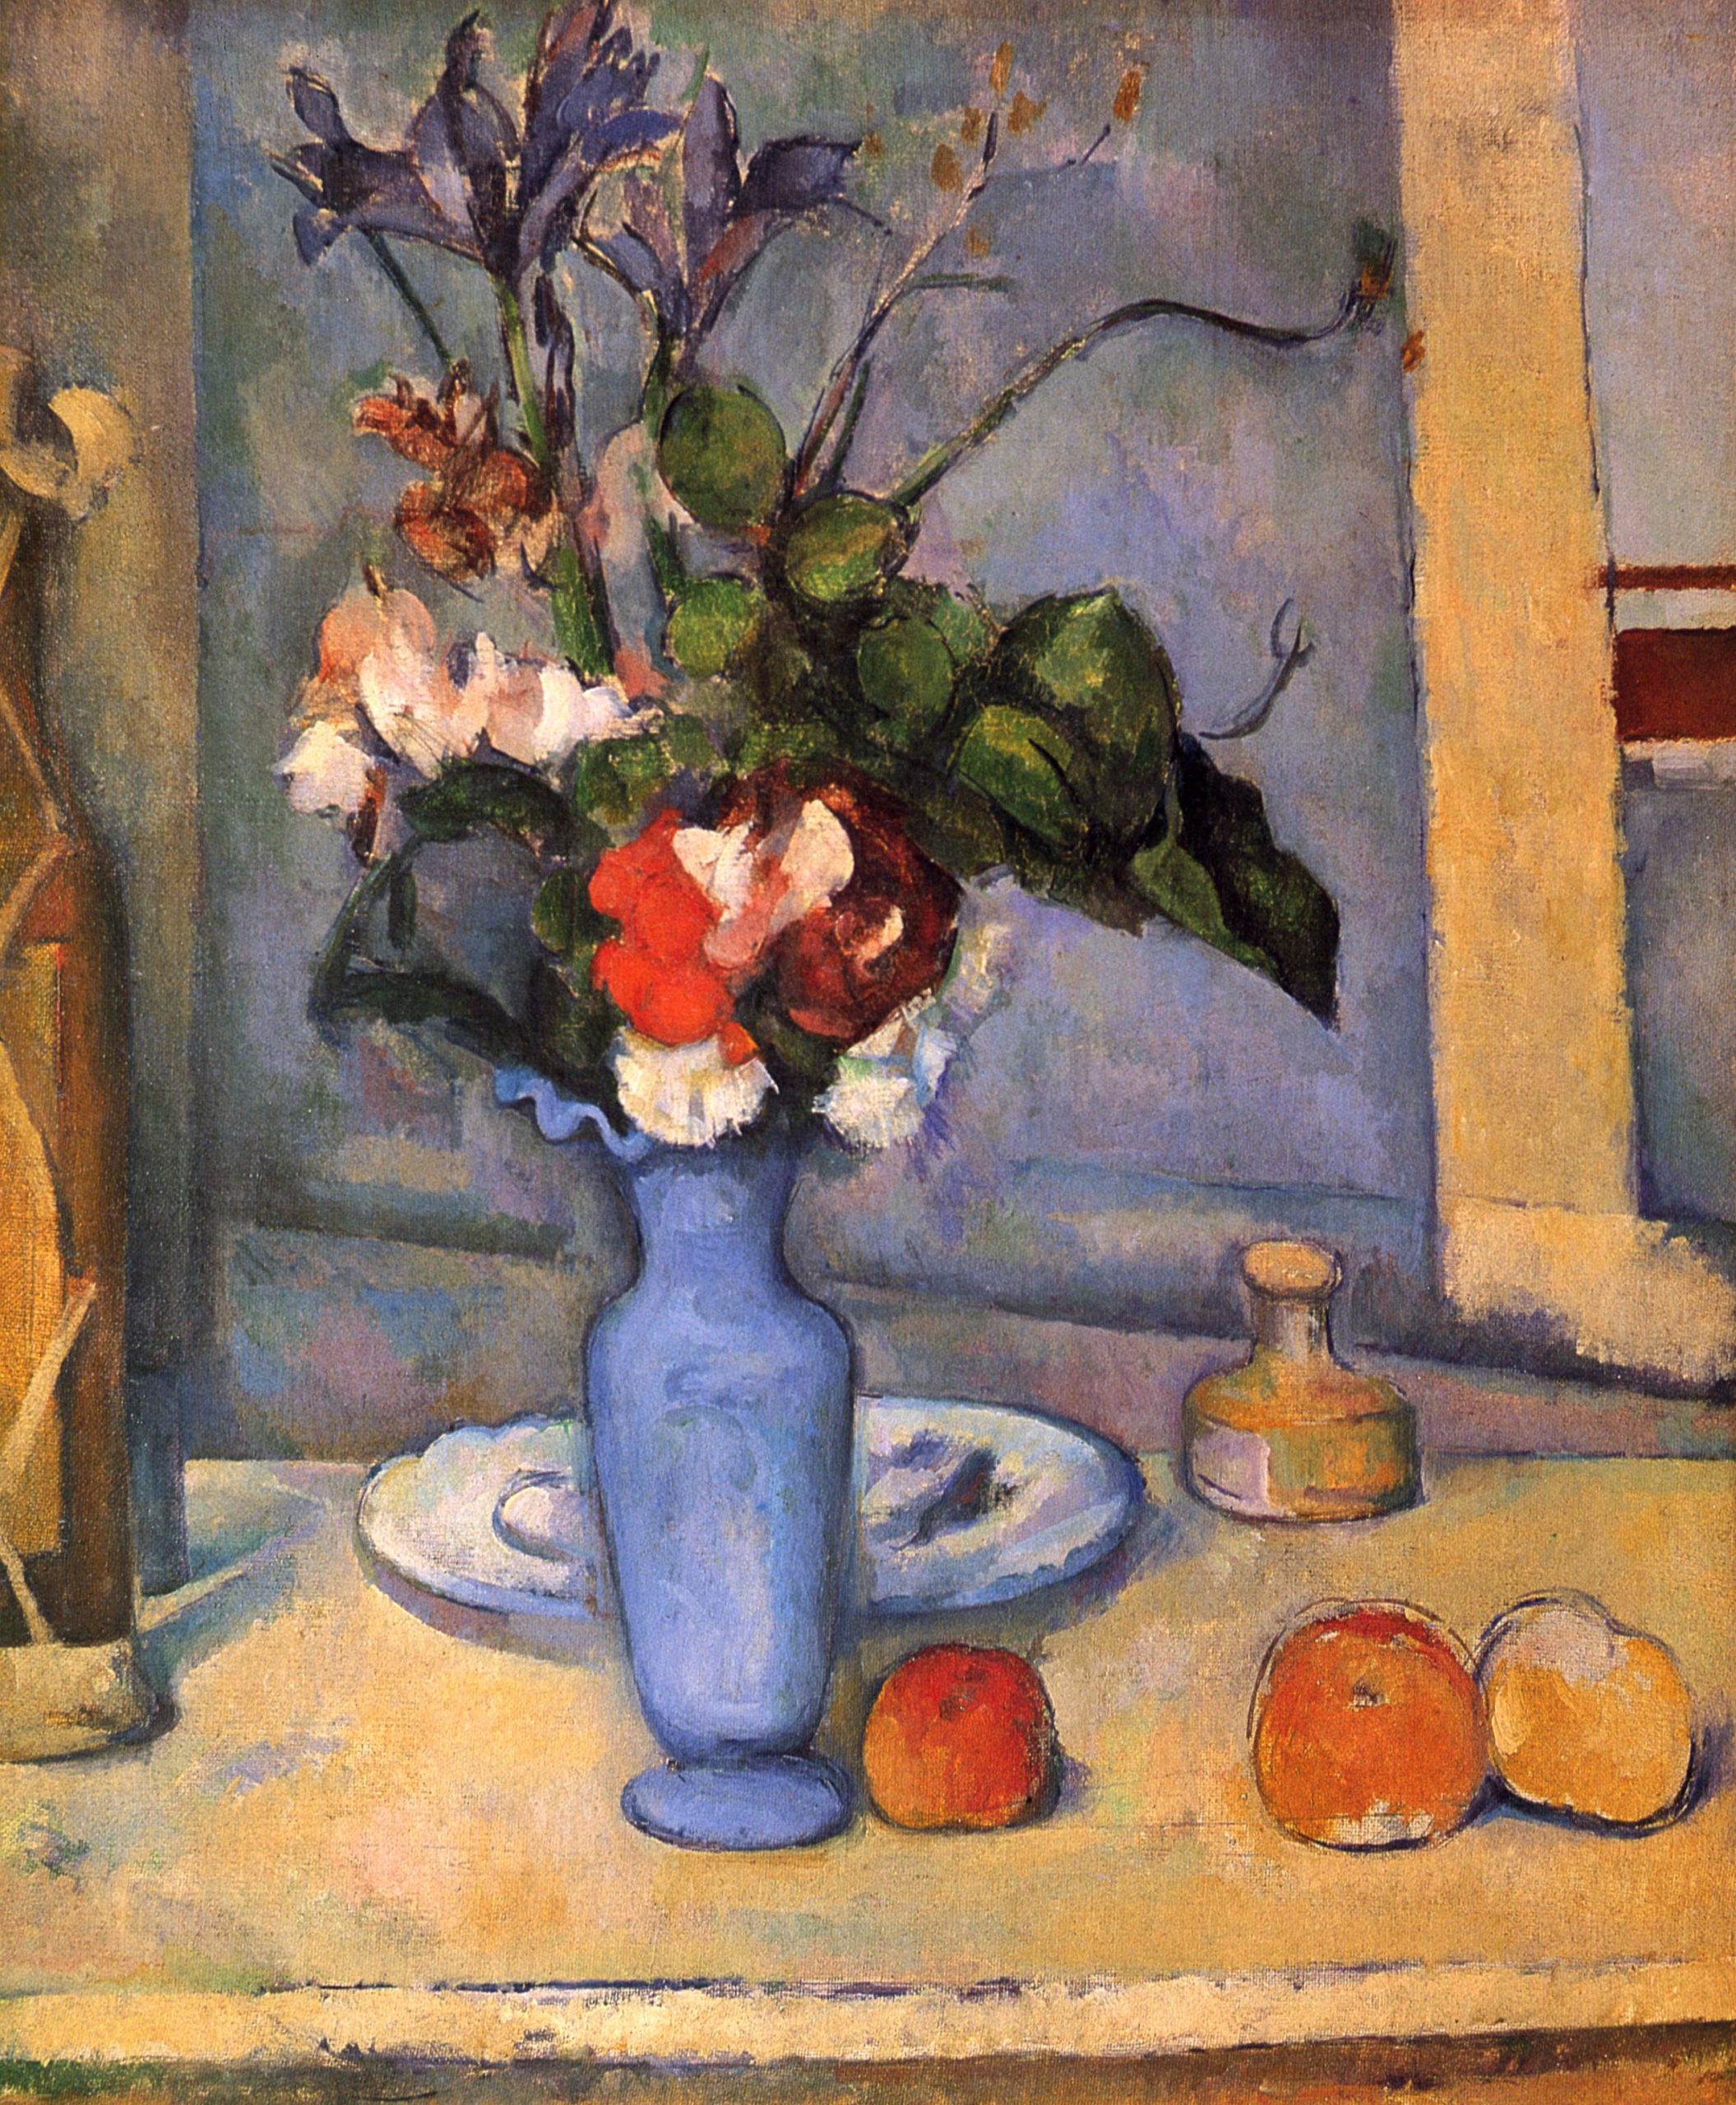 Paul Cézanne, The Blue Vase, 1889-90, oil on canvas, 61 x 50 cm (Musée d’Orsay)